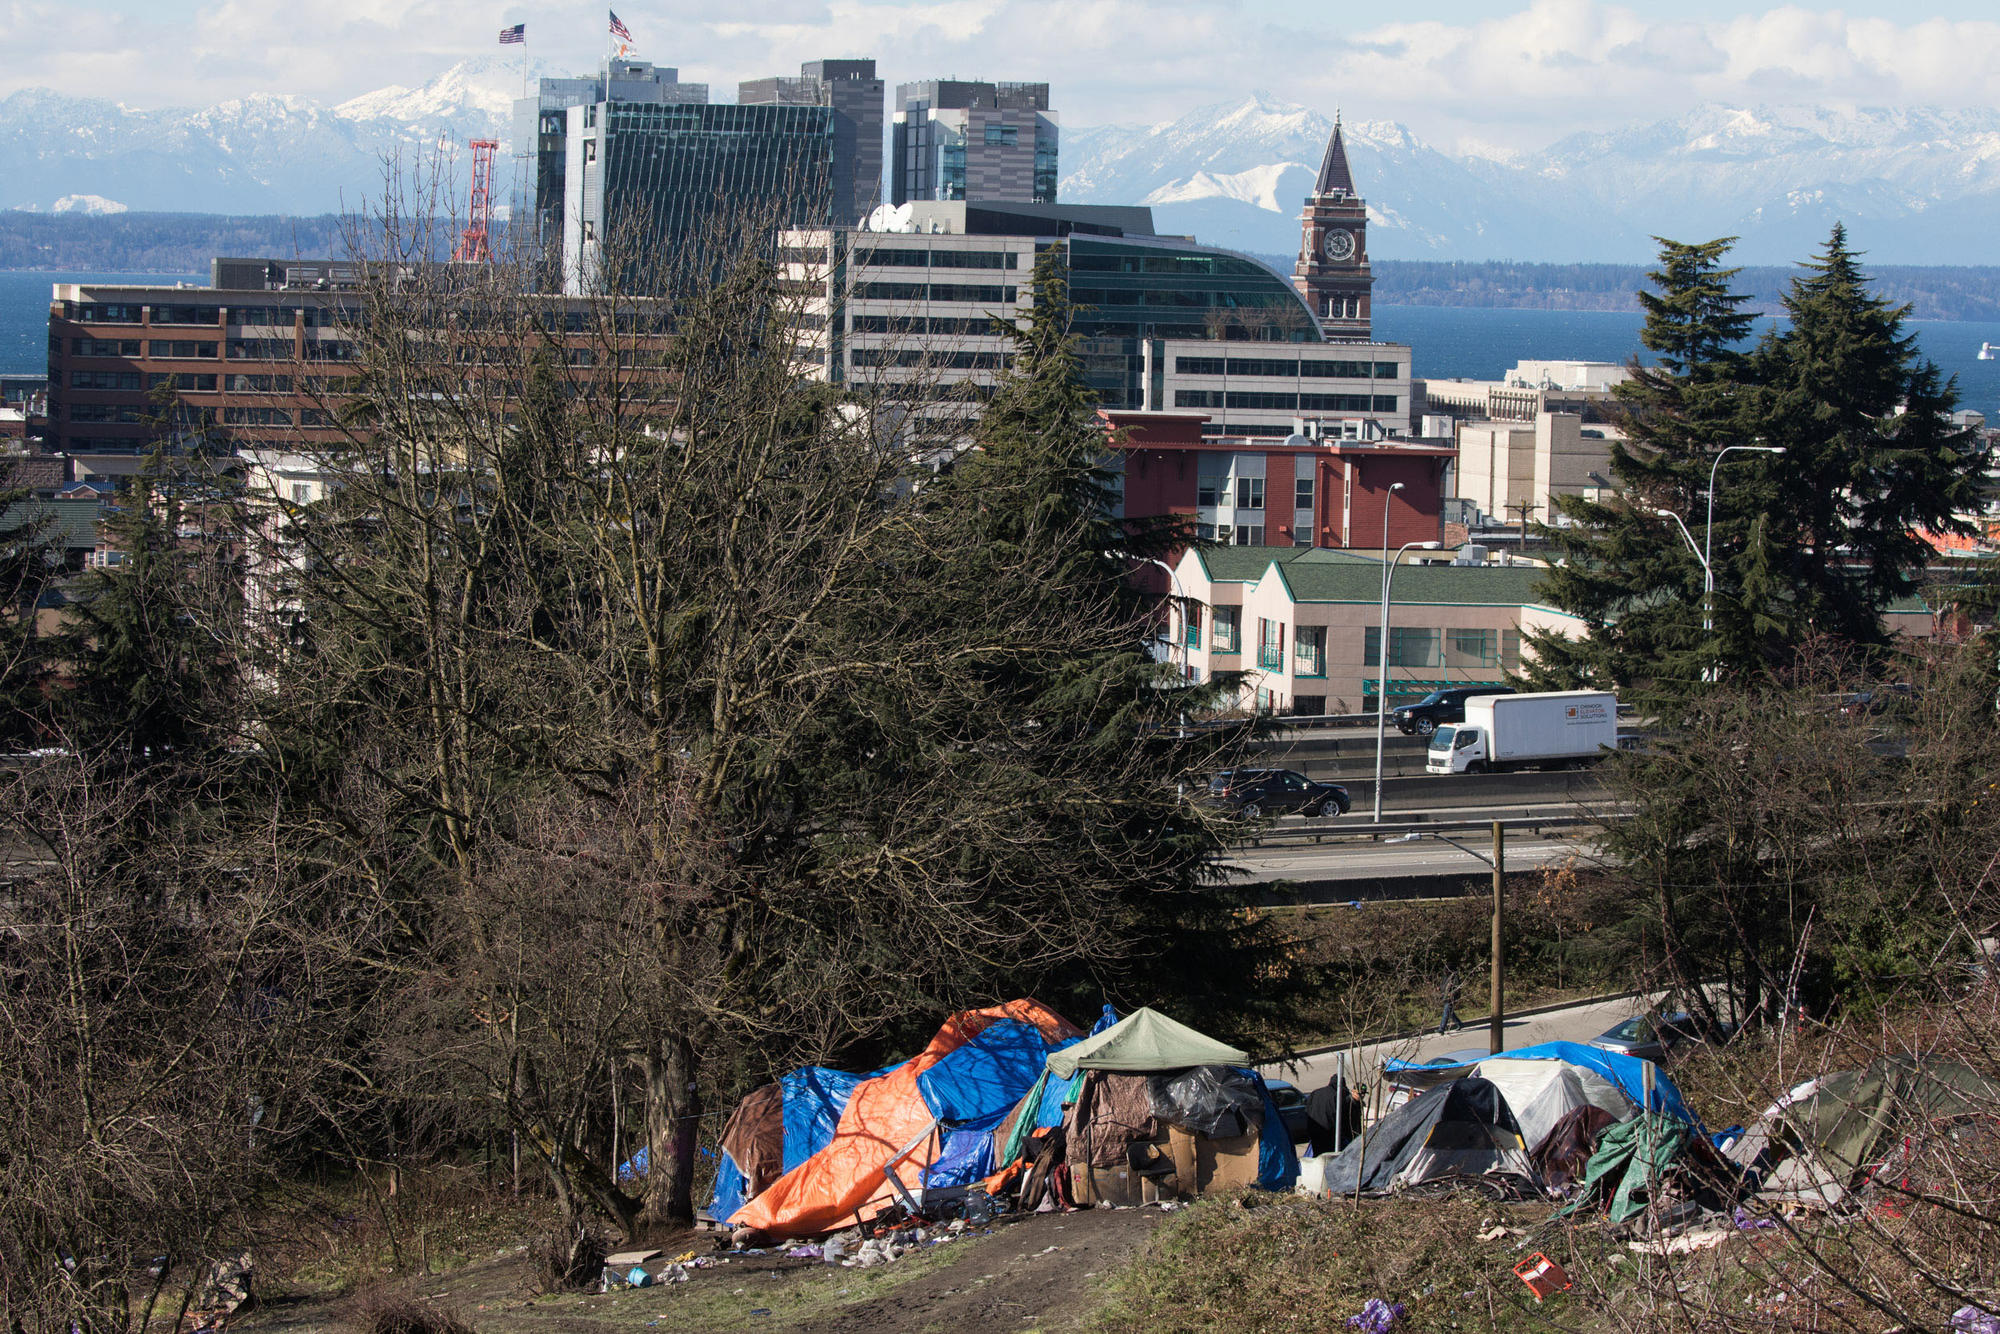 Homeless tent encampment